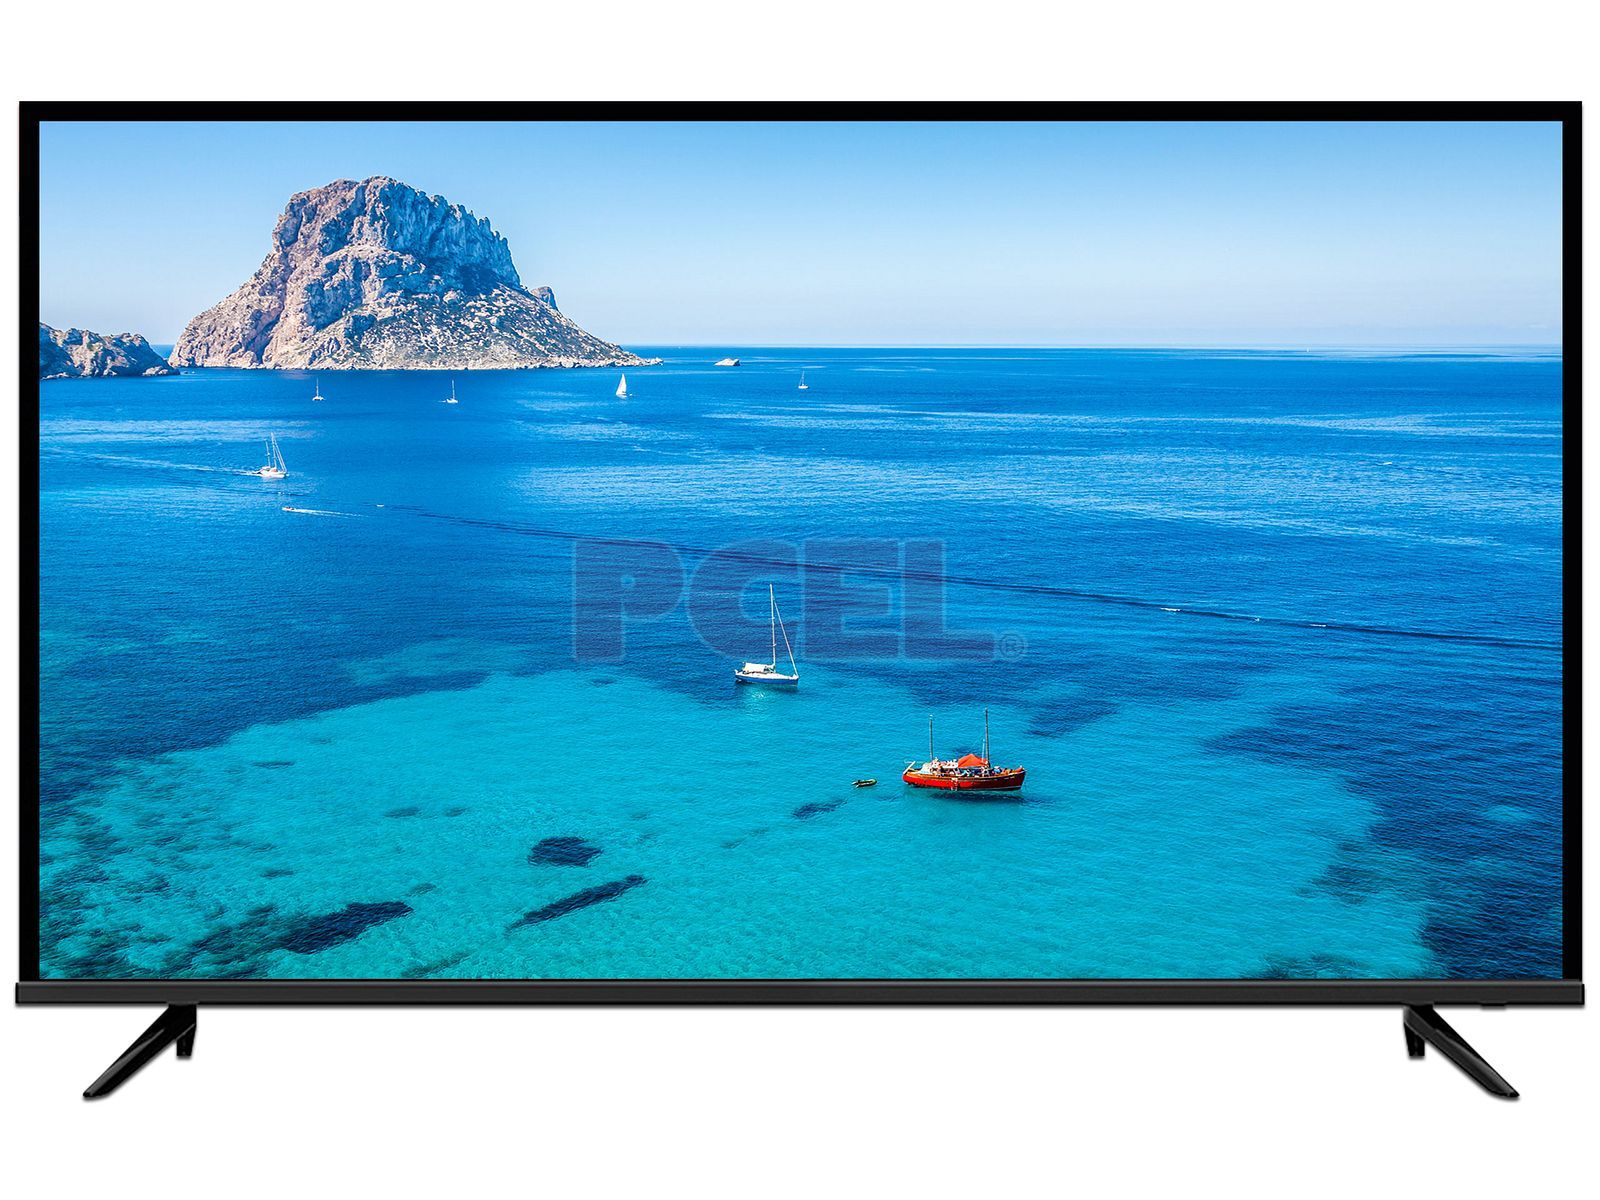 Modelos de JVC Roku TV – Encuentra smart TV HD y 4K